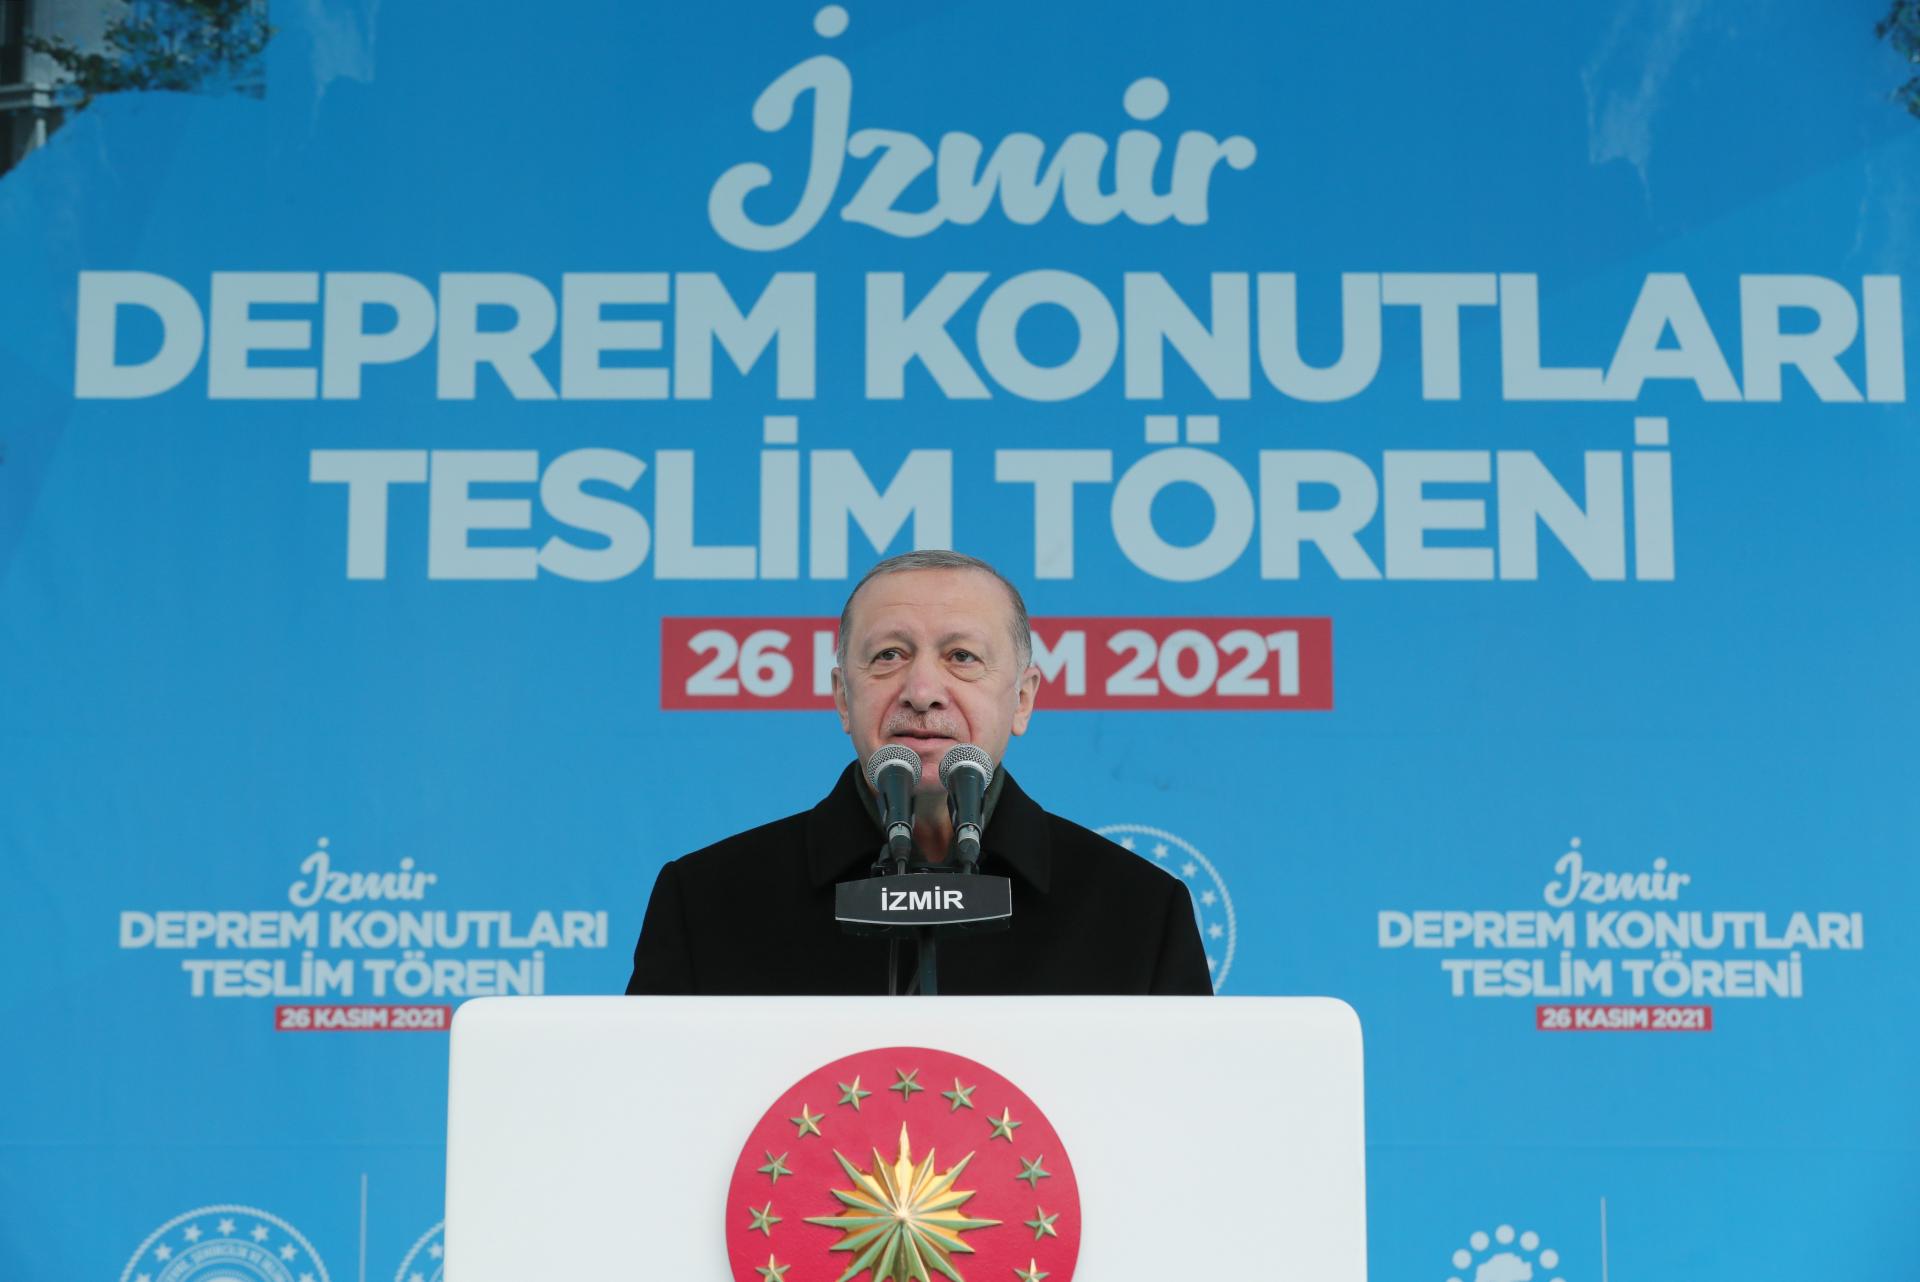 Претседателот Ердоган: Турција располага со најбрз, најефикасен, најпрактичен систем на интервенција при катастрофи